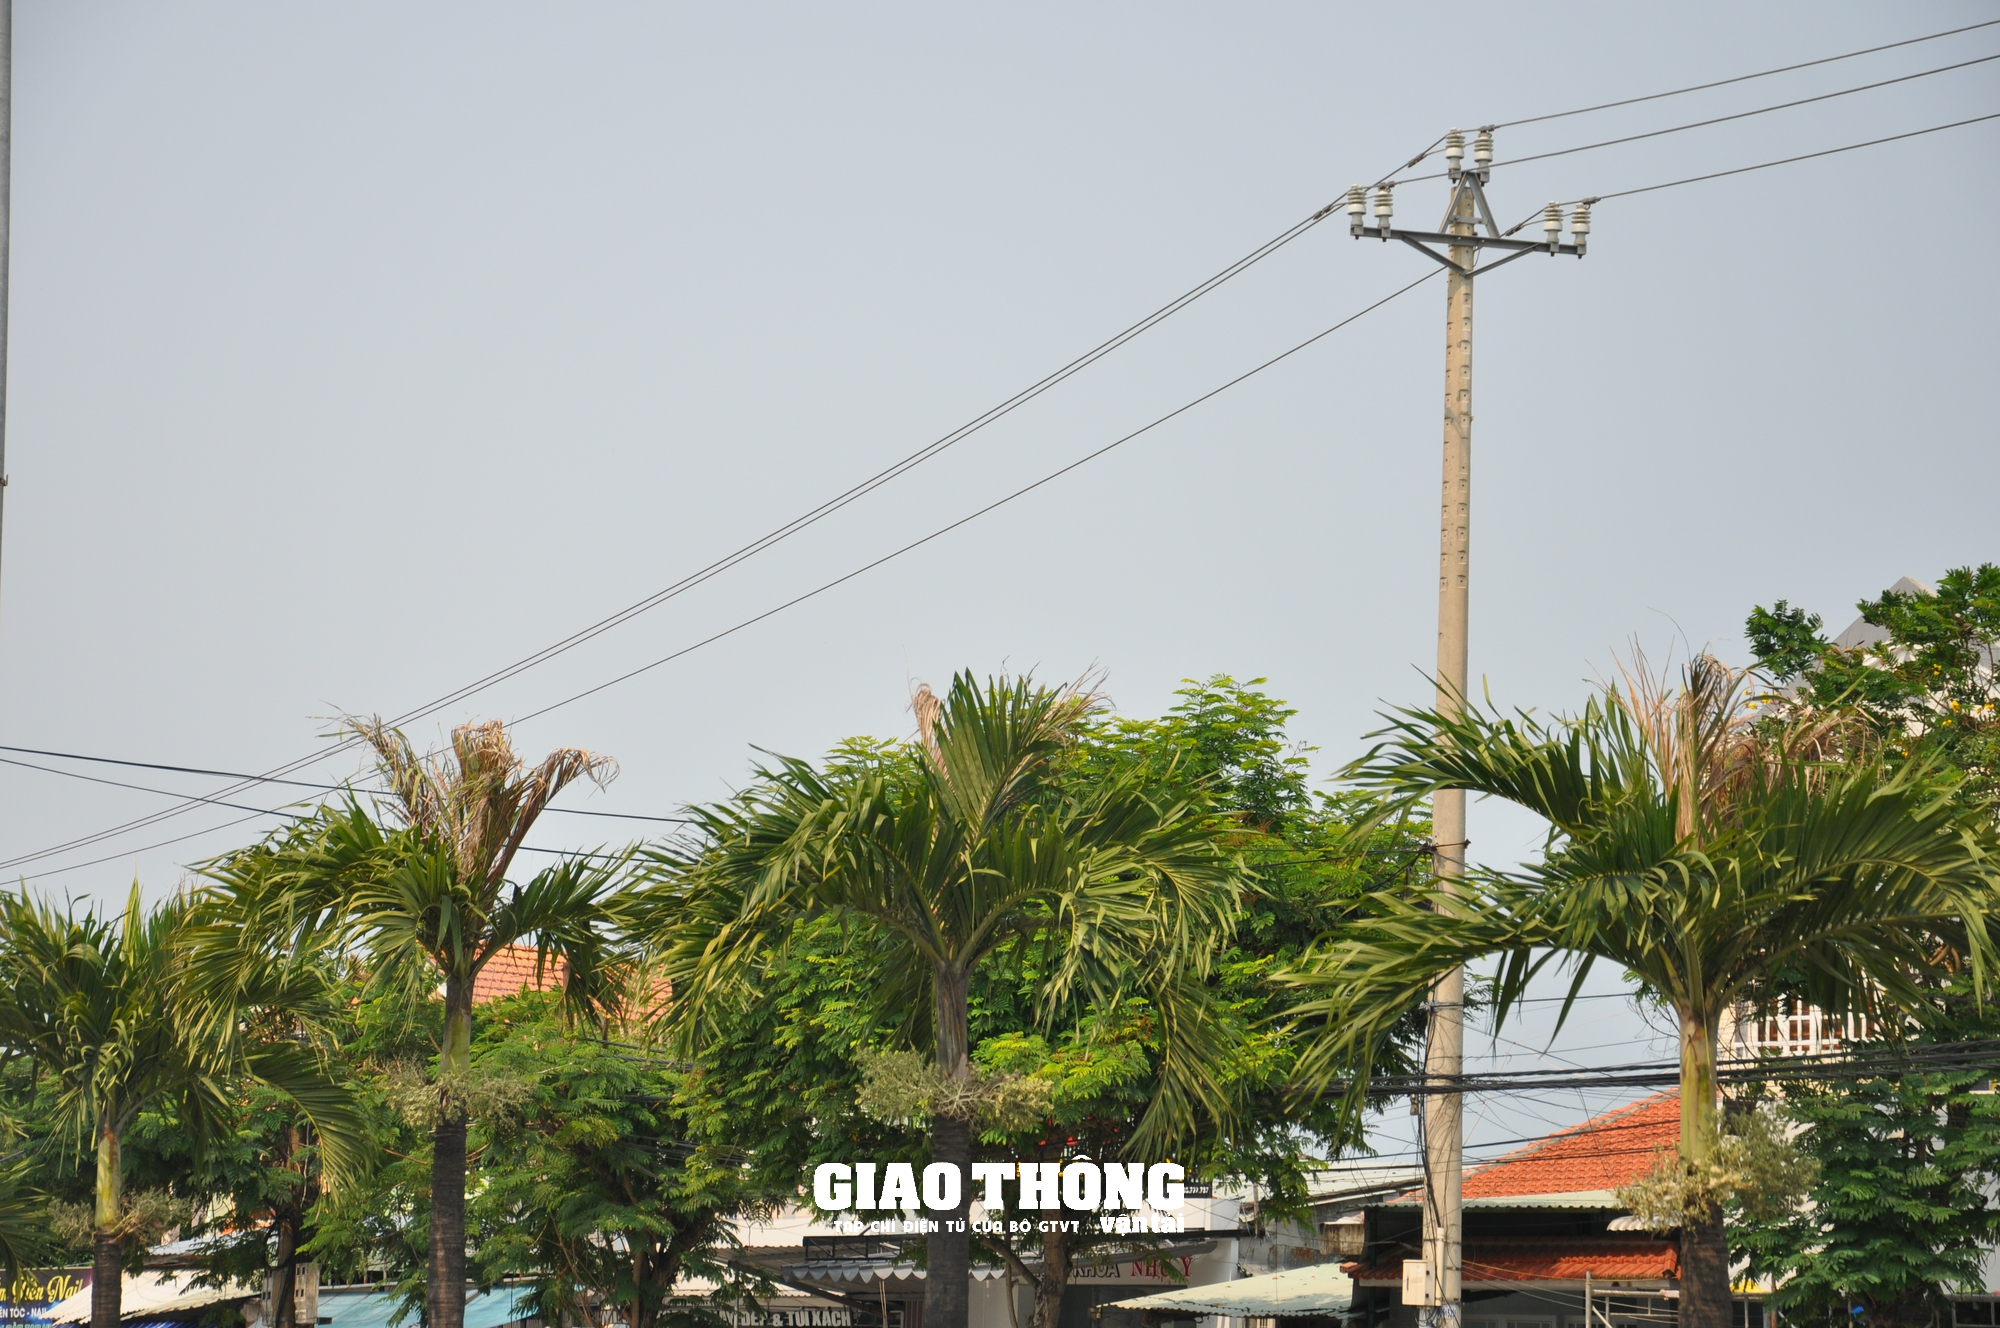 Hàng loạt cây xanh, thảm cỏ trên các tuyến đường ở Quảng Nam chết cháy - Ảnh 2.